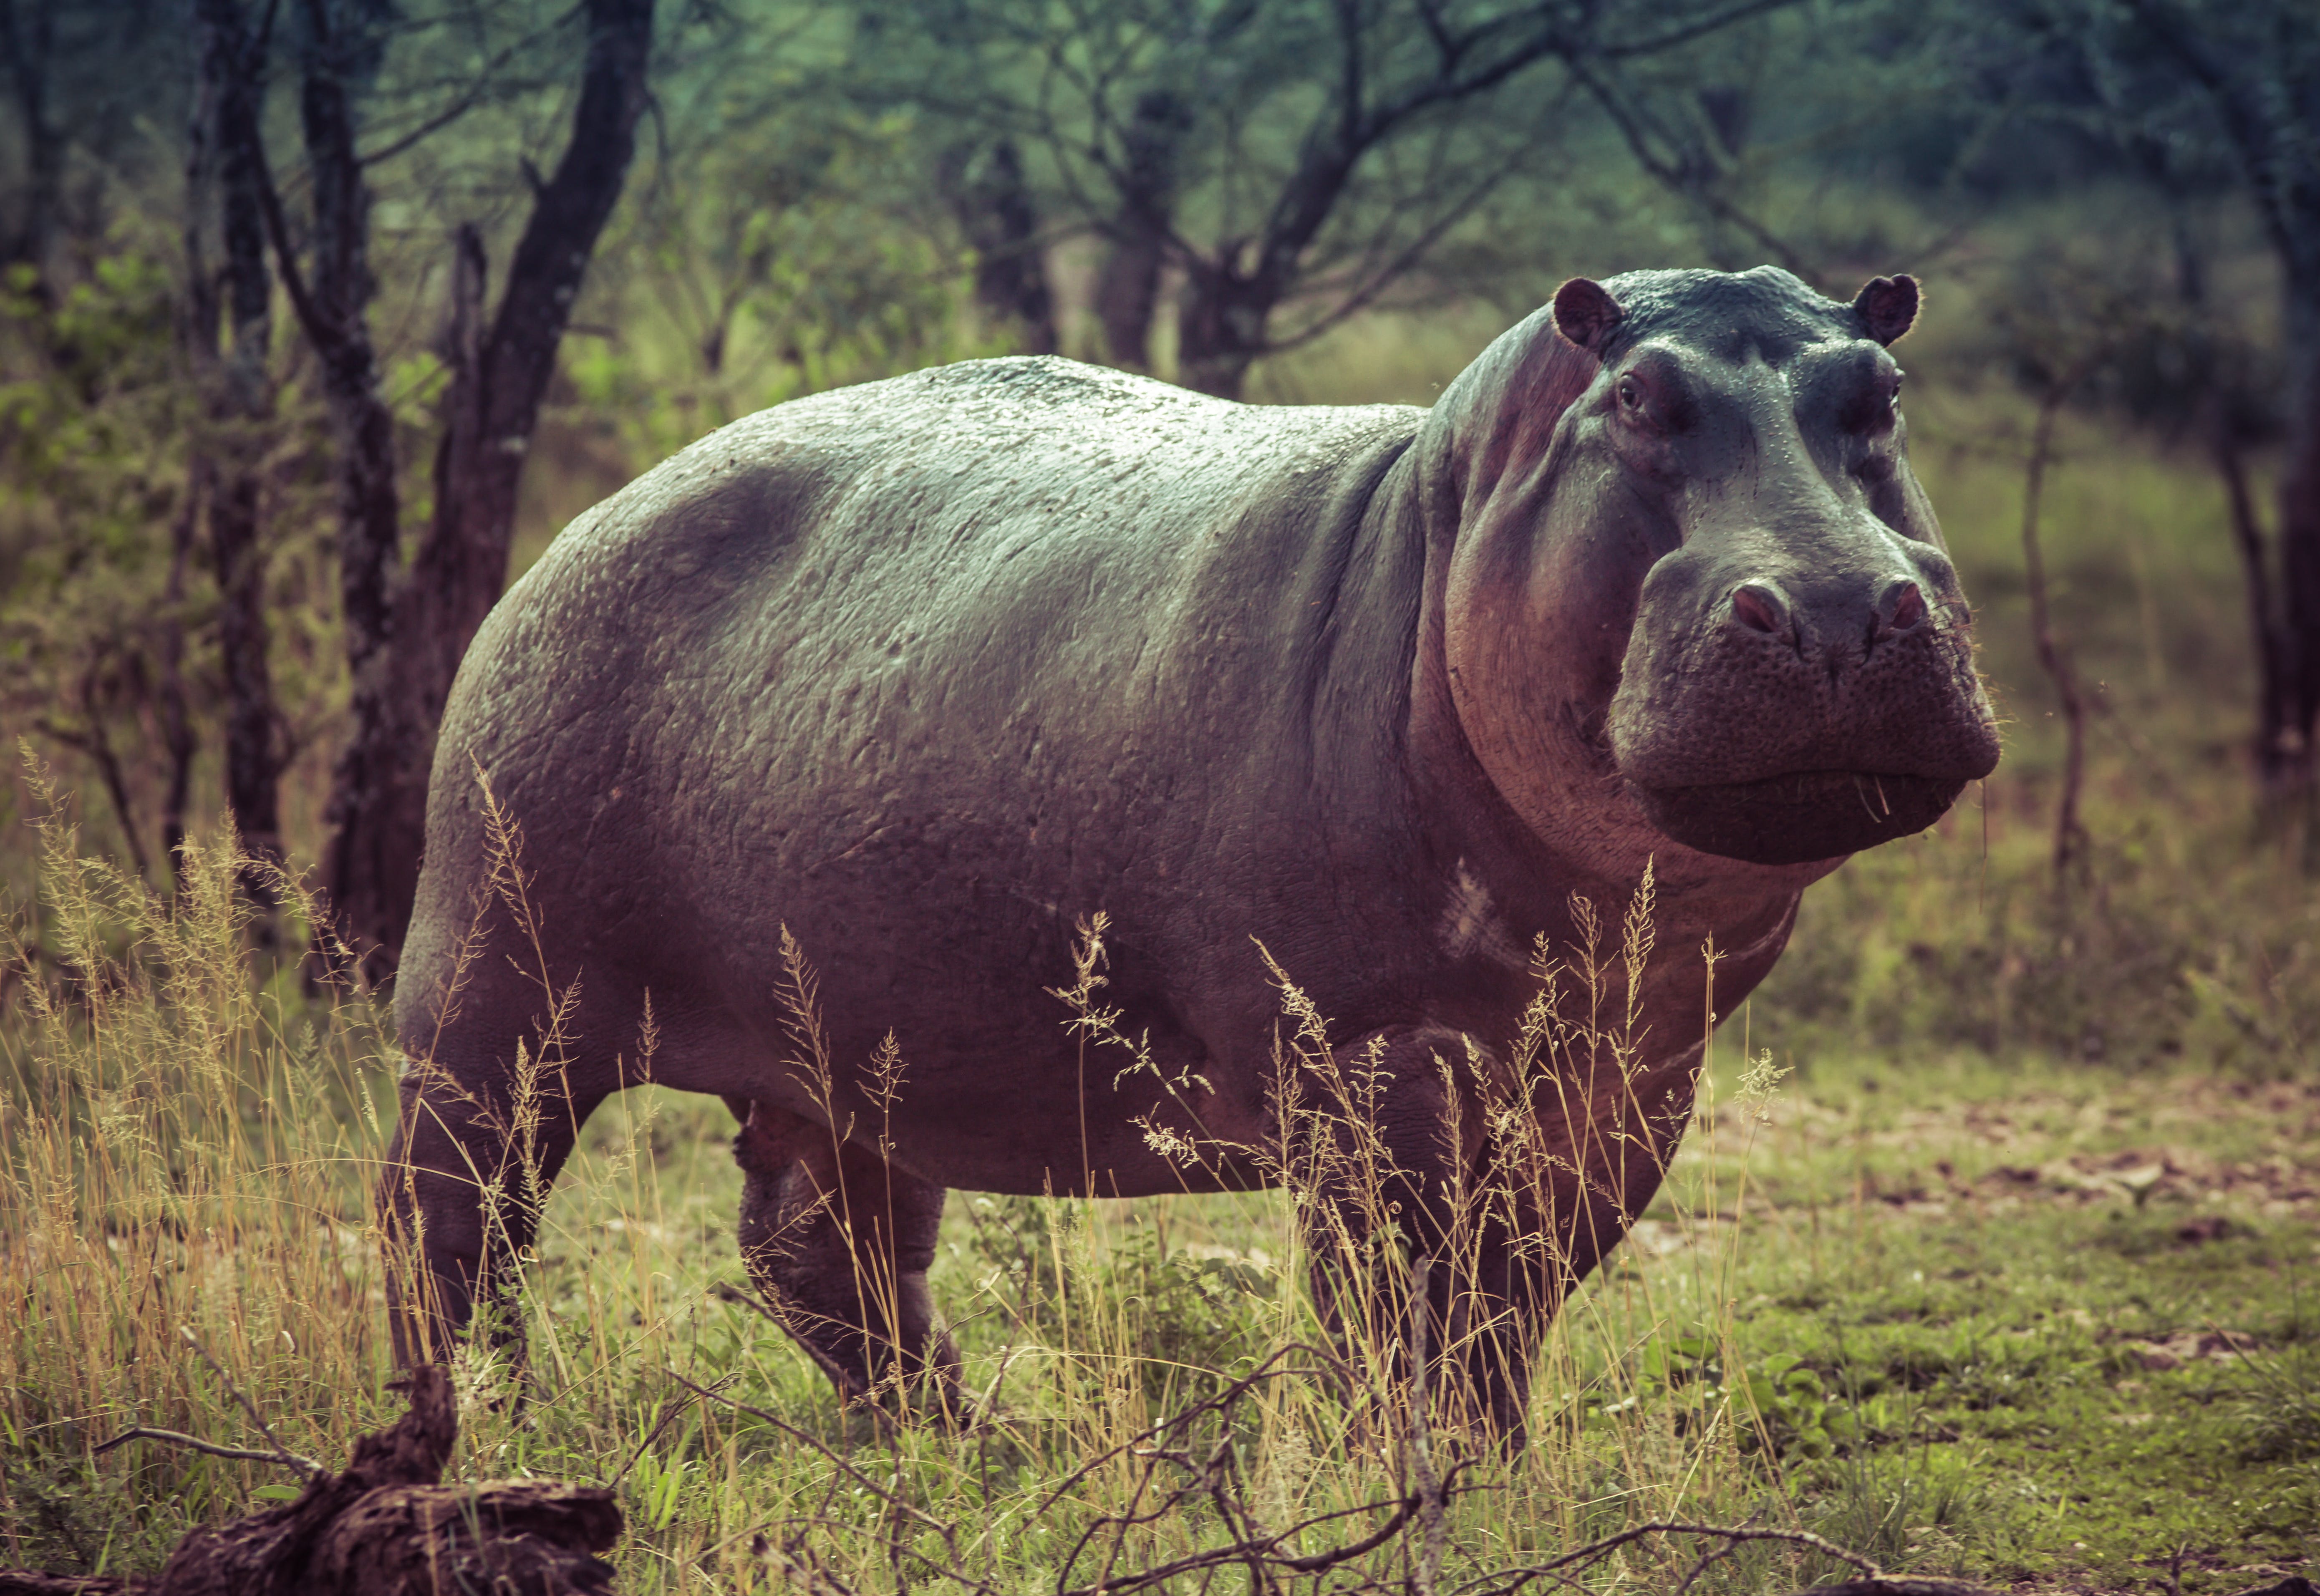 A black hippo. | Source: Pexels